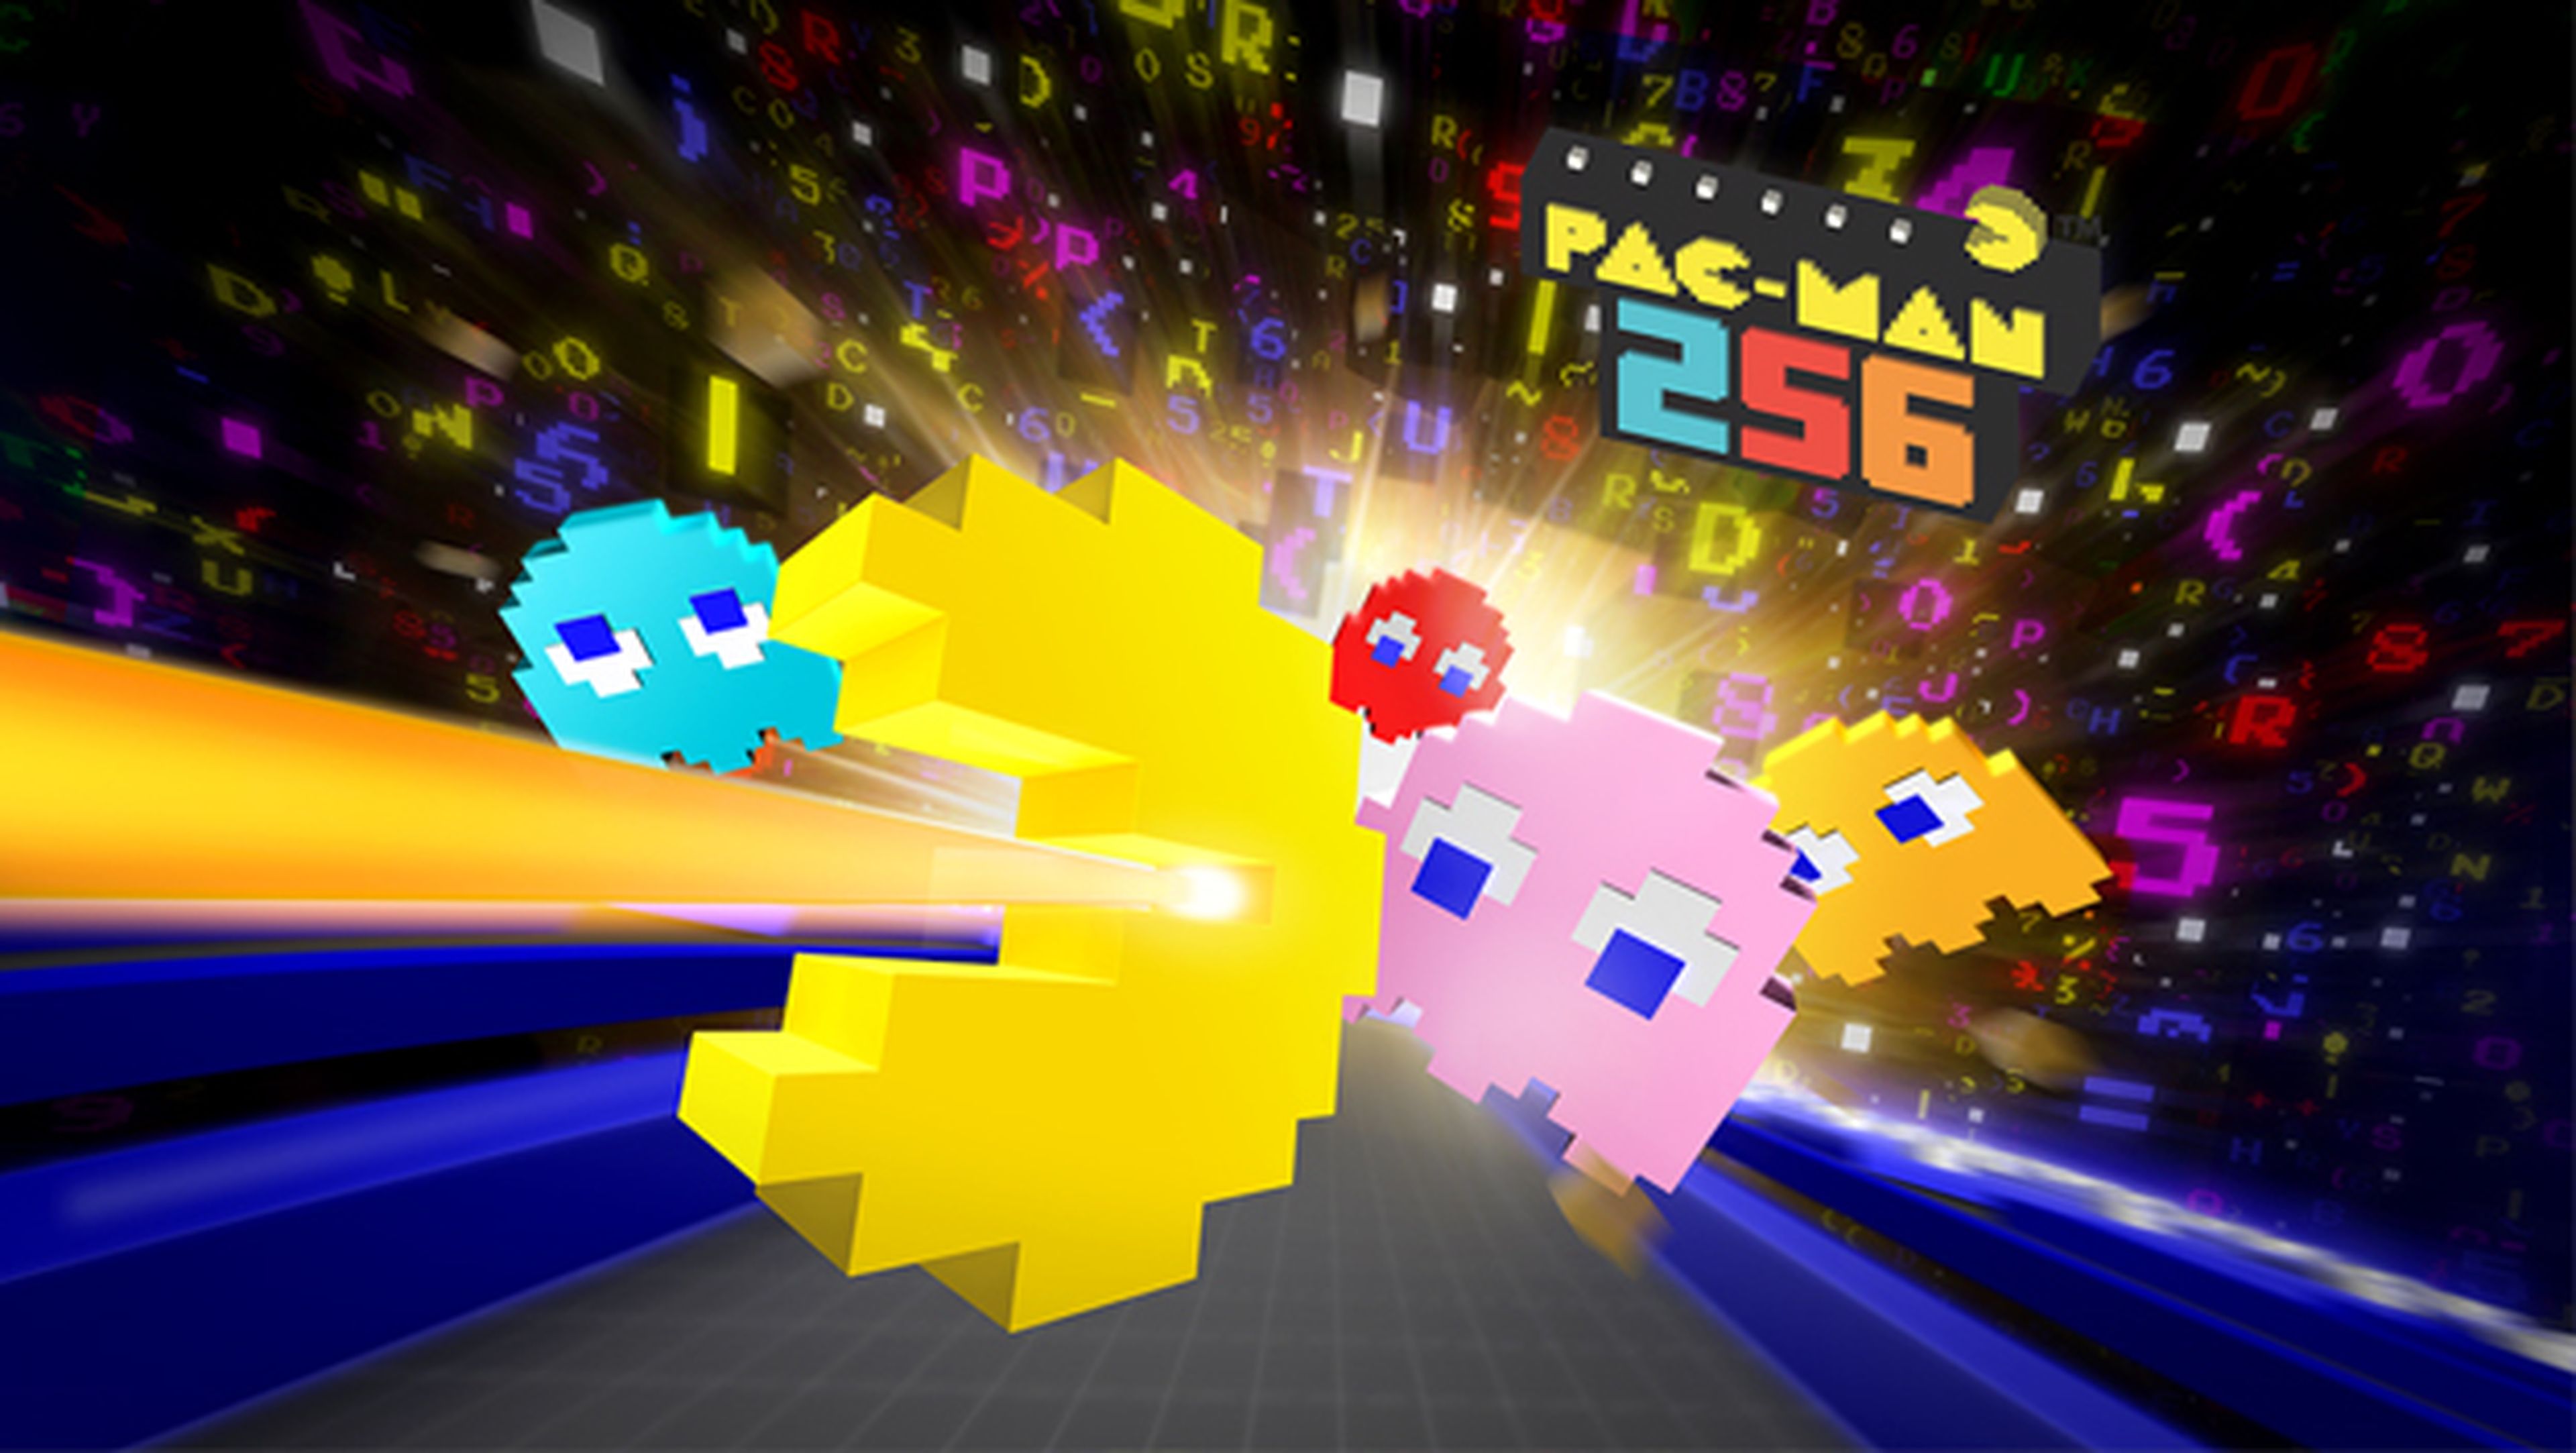 Pac-Man 256 para PS4, Xbox One y Pc, disponible en junio